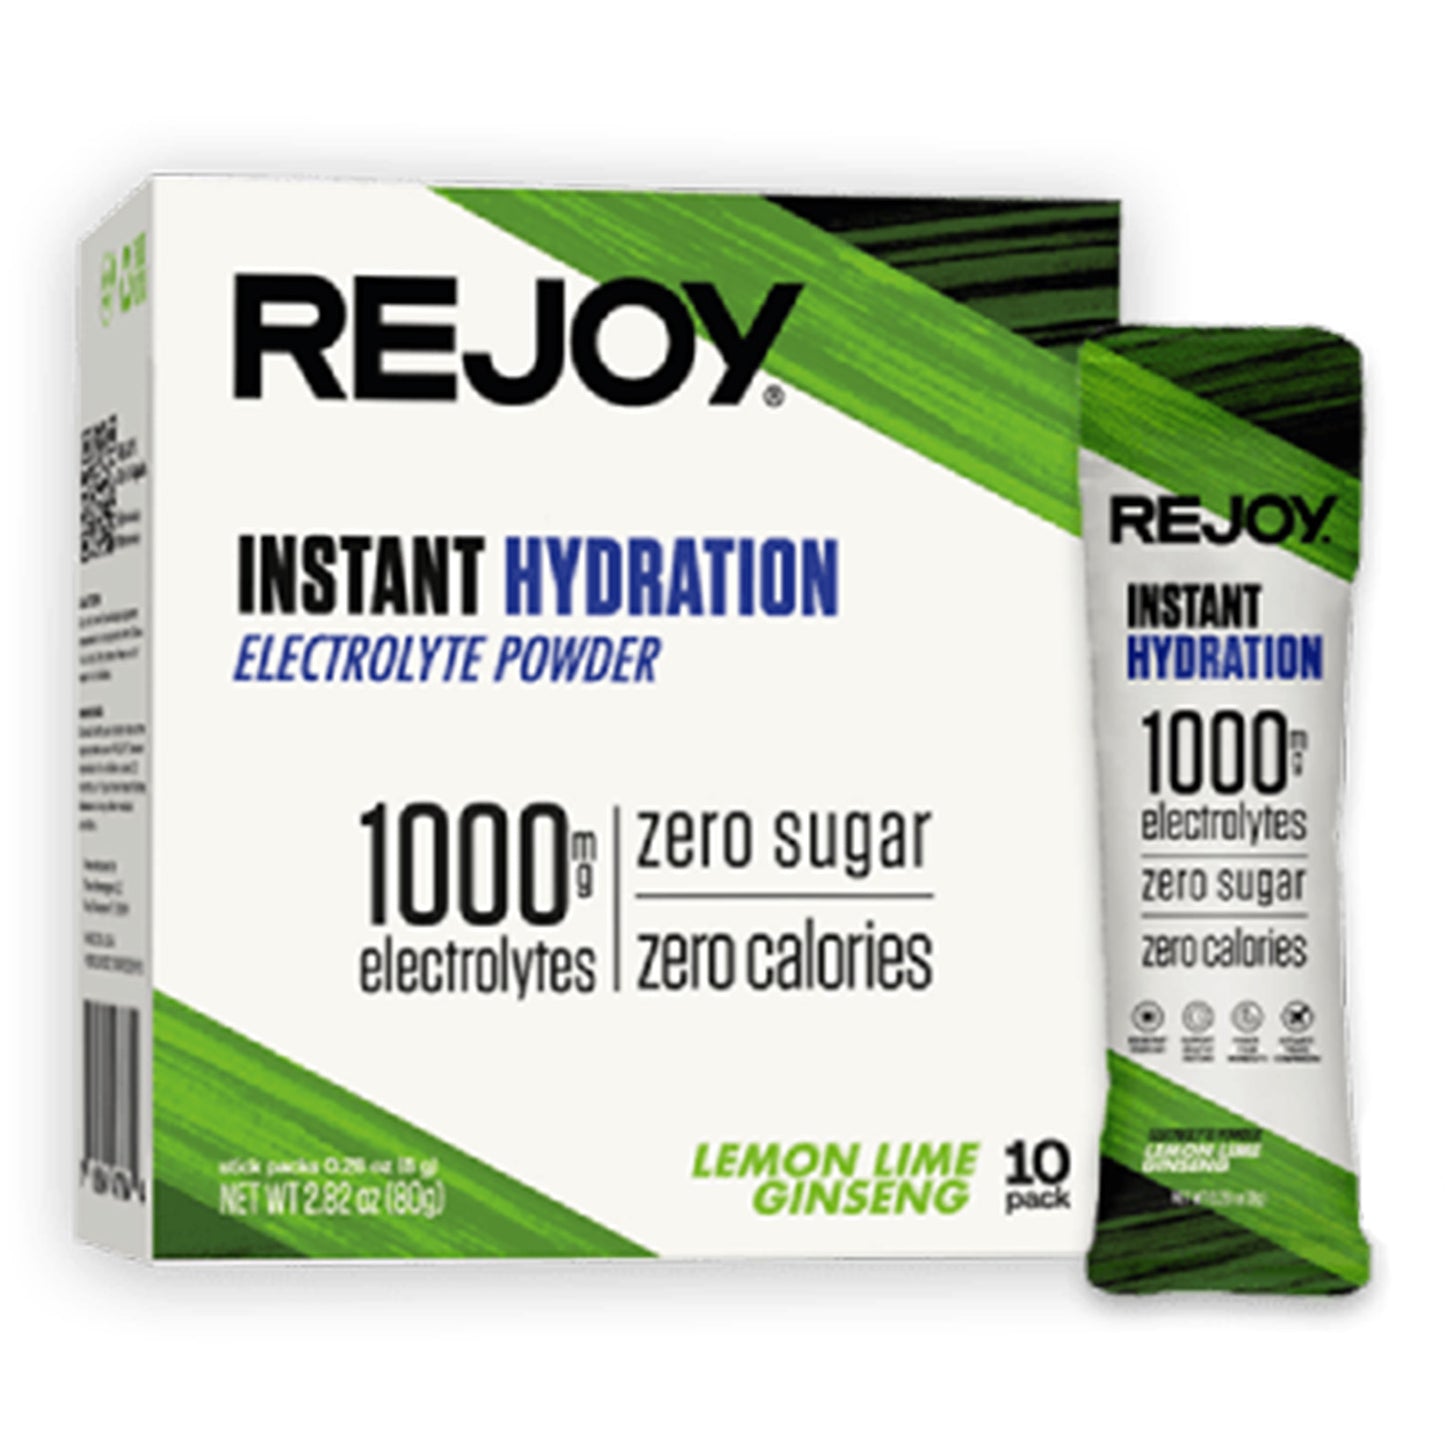 Eleva tu Hidratación con Rejoy Instant Hydration | ProHealth Shop [Panamá]